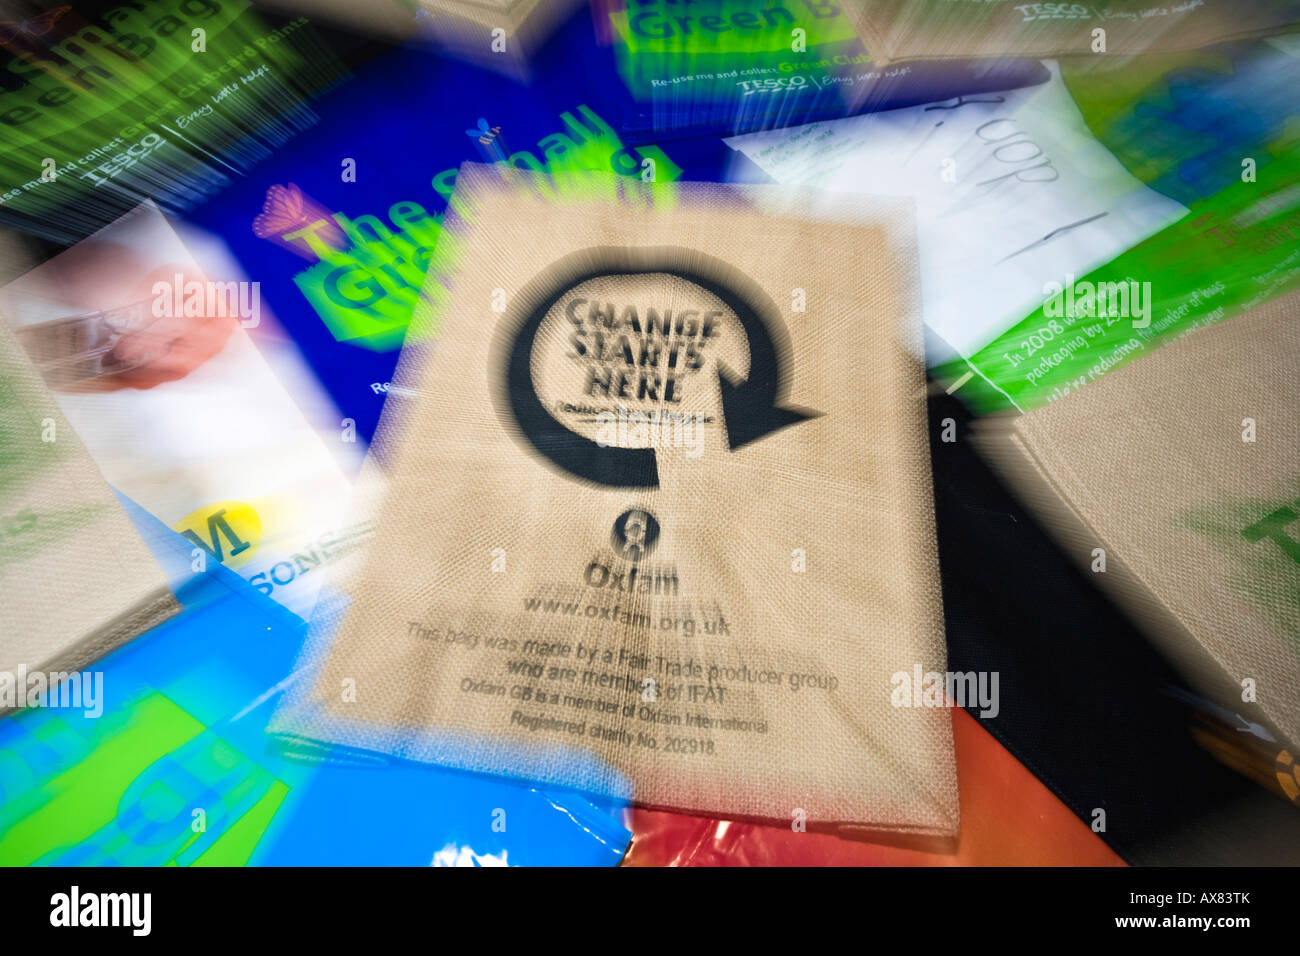 "El cambio empieza aquí' y el logotipo de reciclaje en una bolsa reutilizable de compras de arpillera, REINO UNIDO Foto de stock